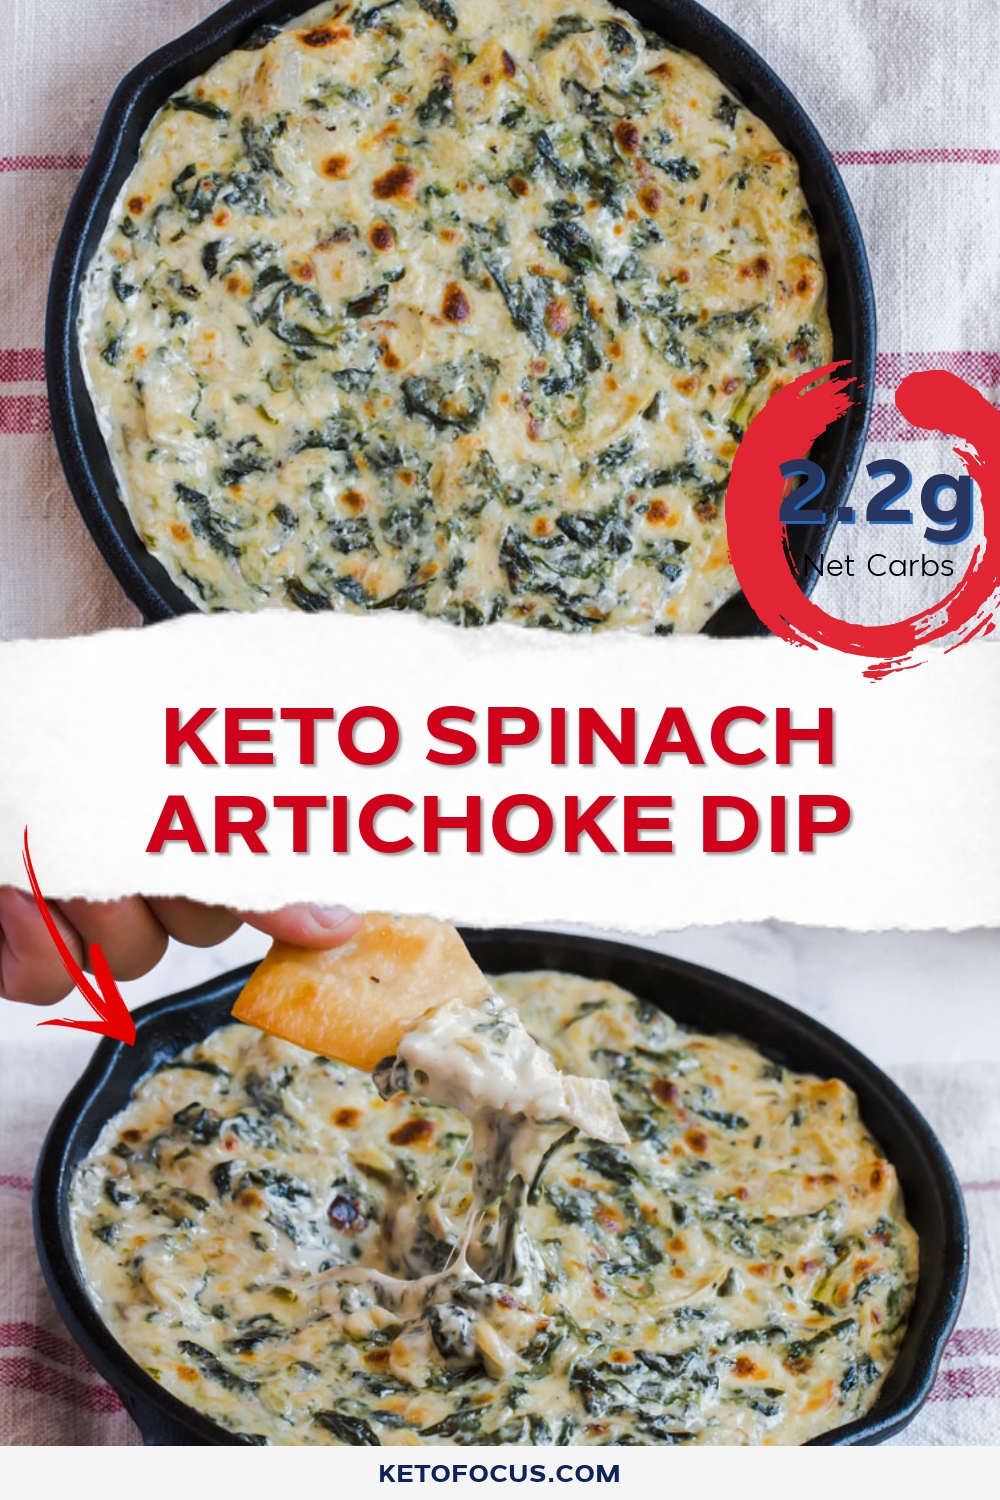 Keto Spinach Artichoke Dip